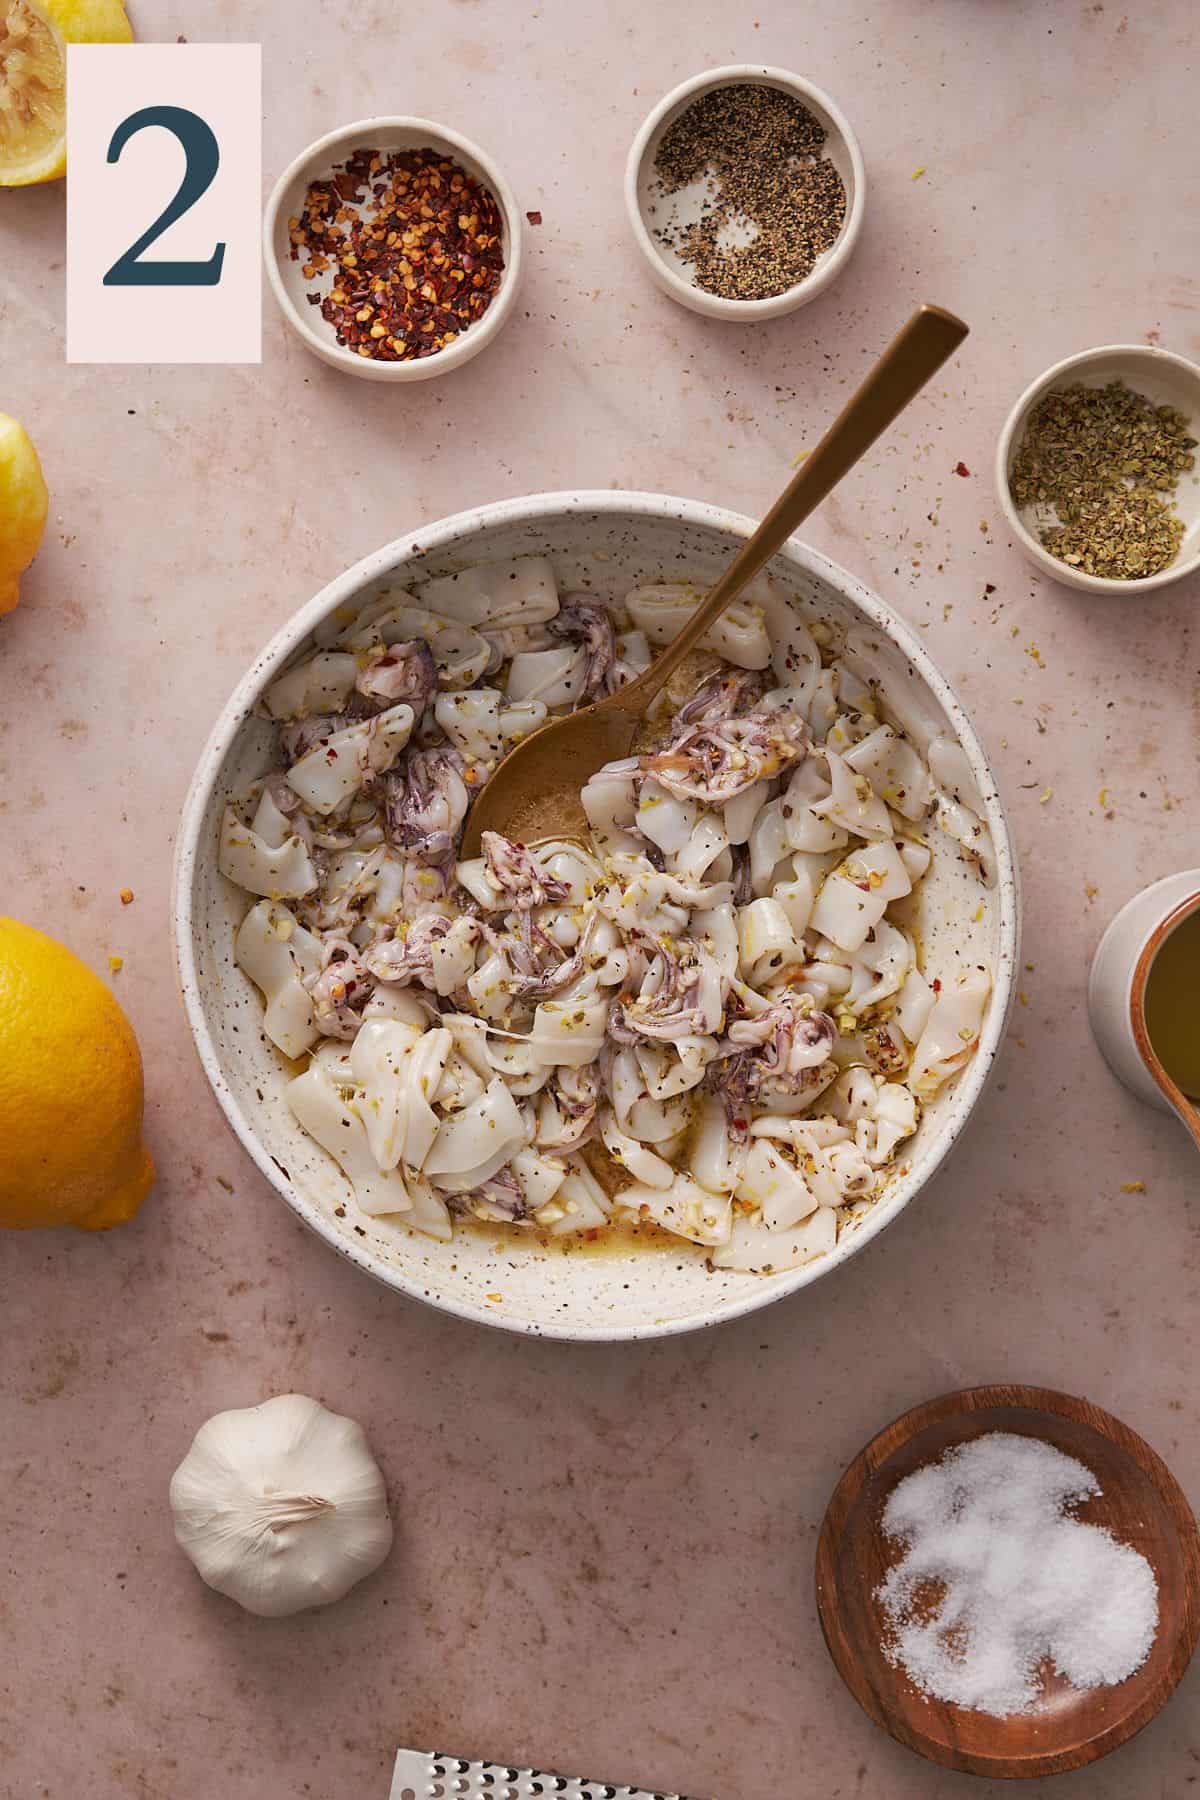 calamari in a bowl marinating with seasonings, olive oil and lemon juice.